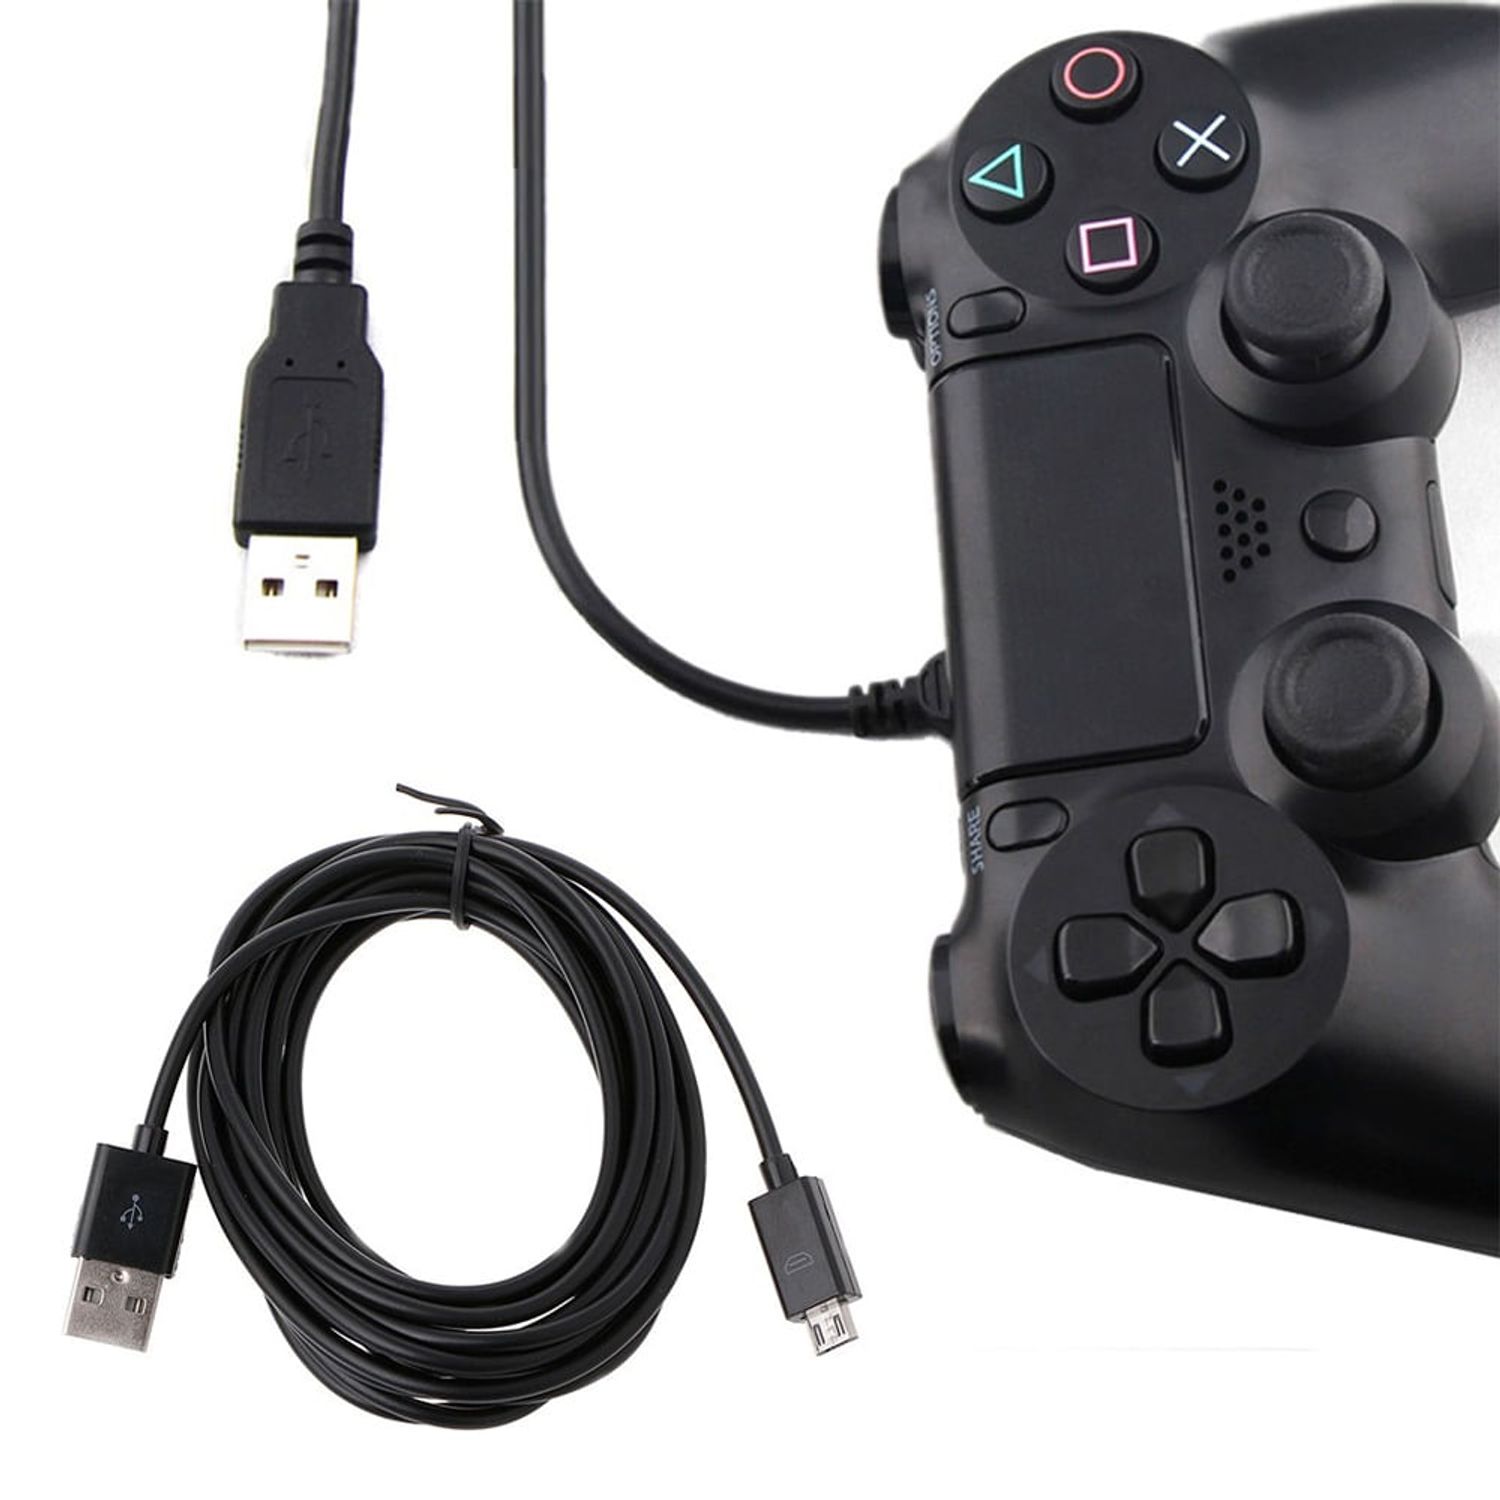 Ya podemos usar nuestro mando de PS4 sin necesidad de cables en